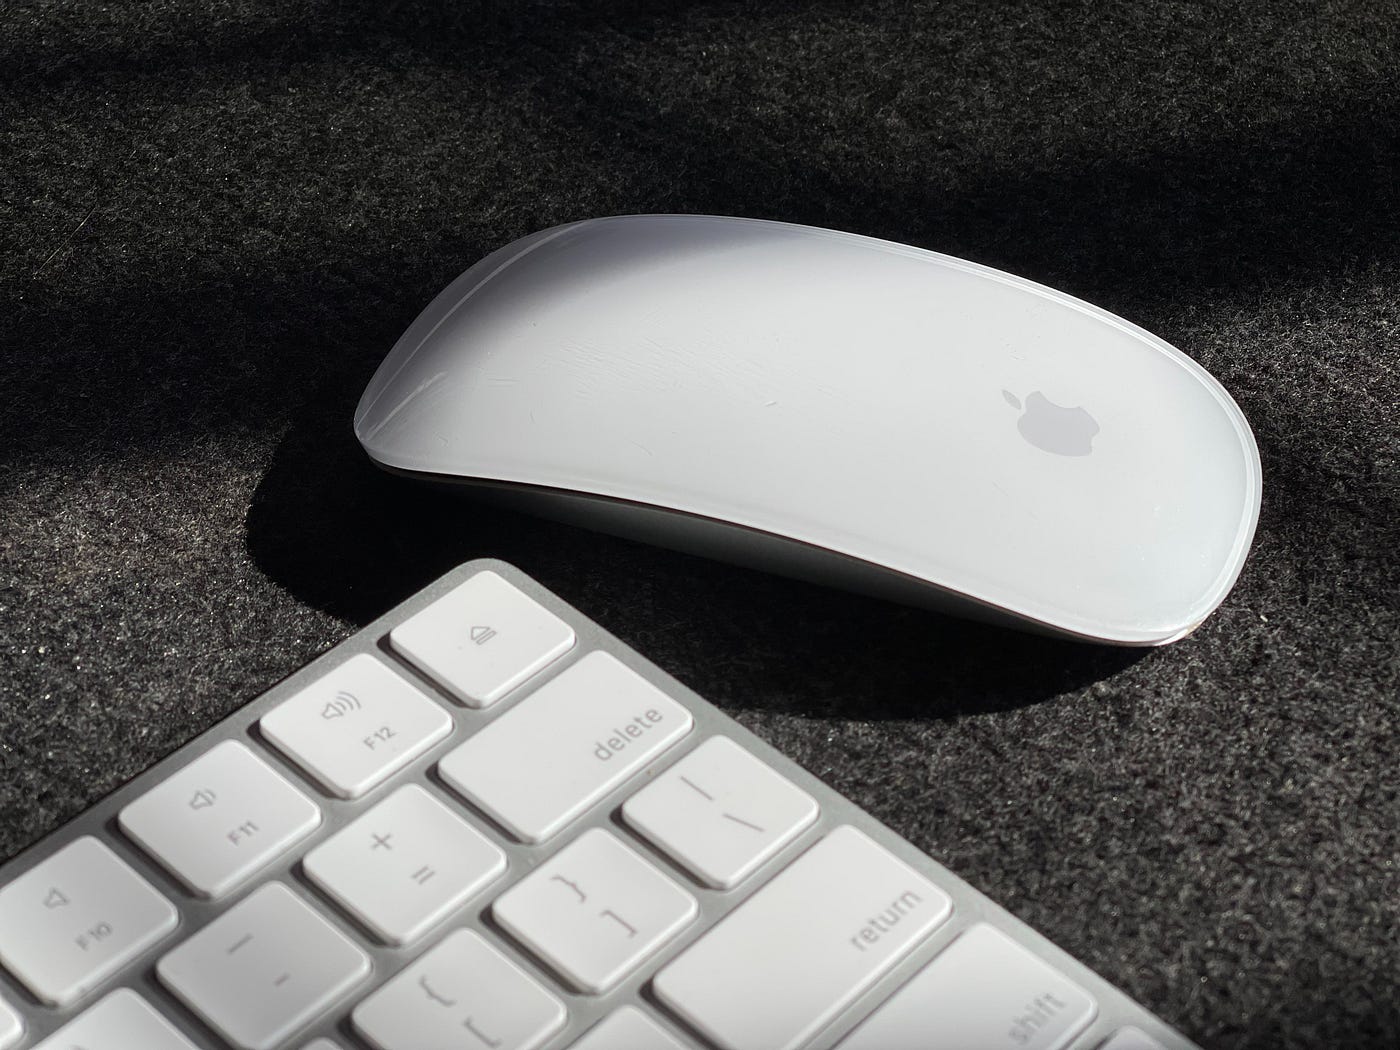 Configurar el Magic Keyboard, el Magic Mouse o el Magic Trackpad